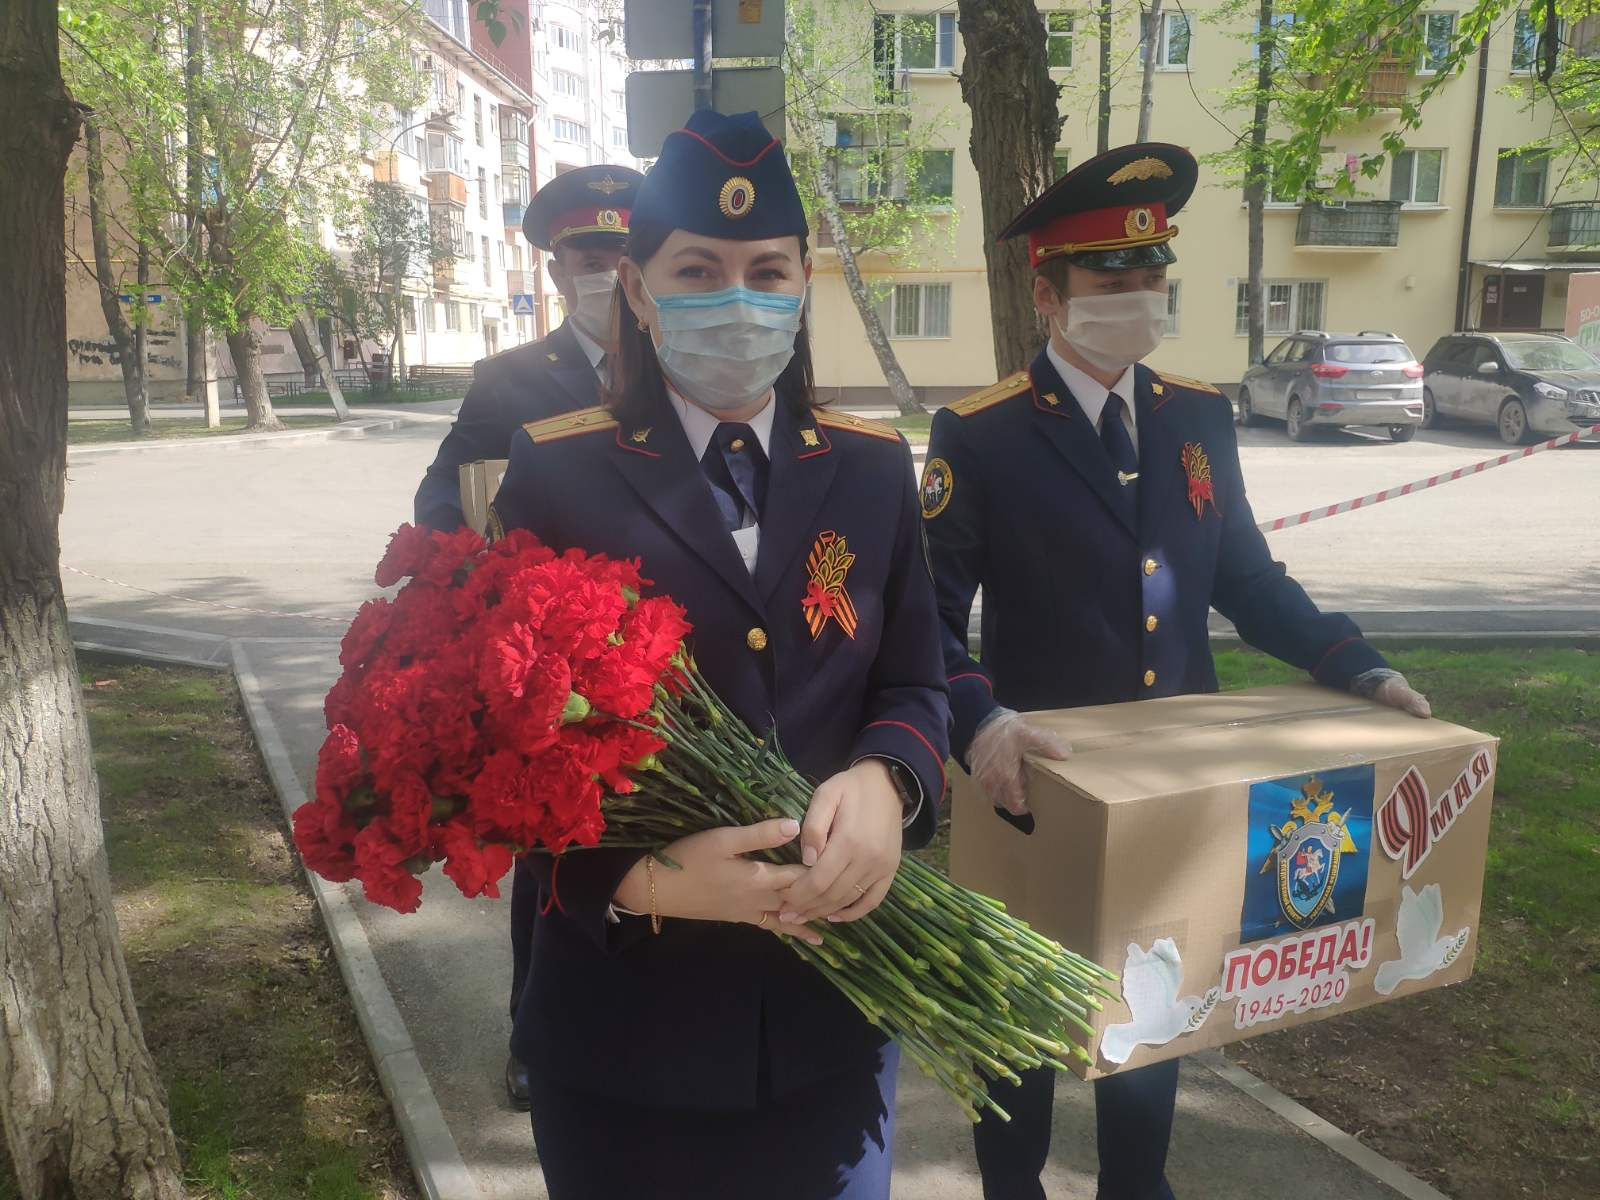 Следователи передали ветеранам подарки и цветы